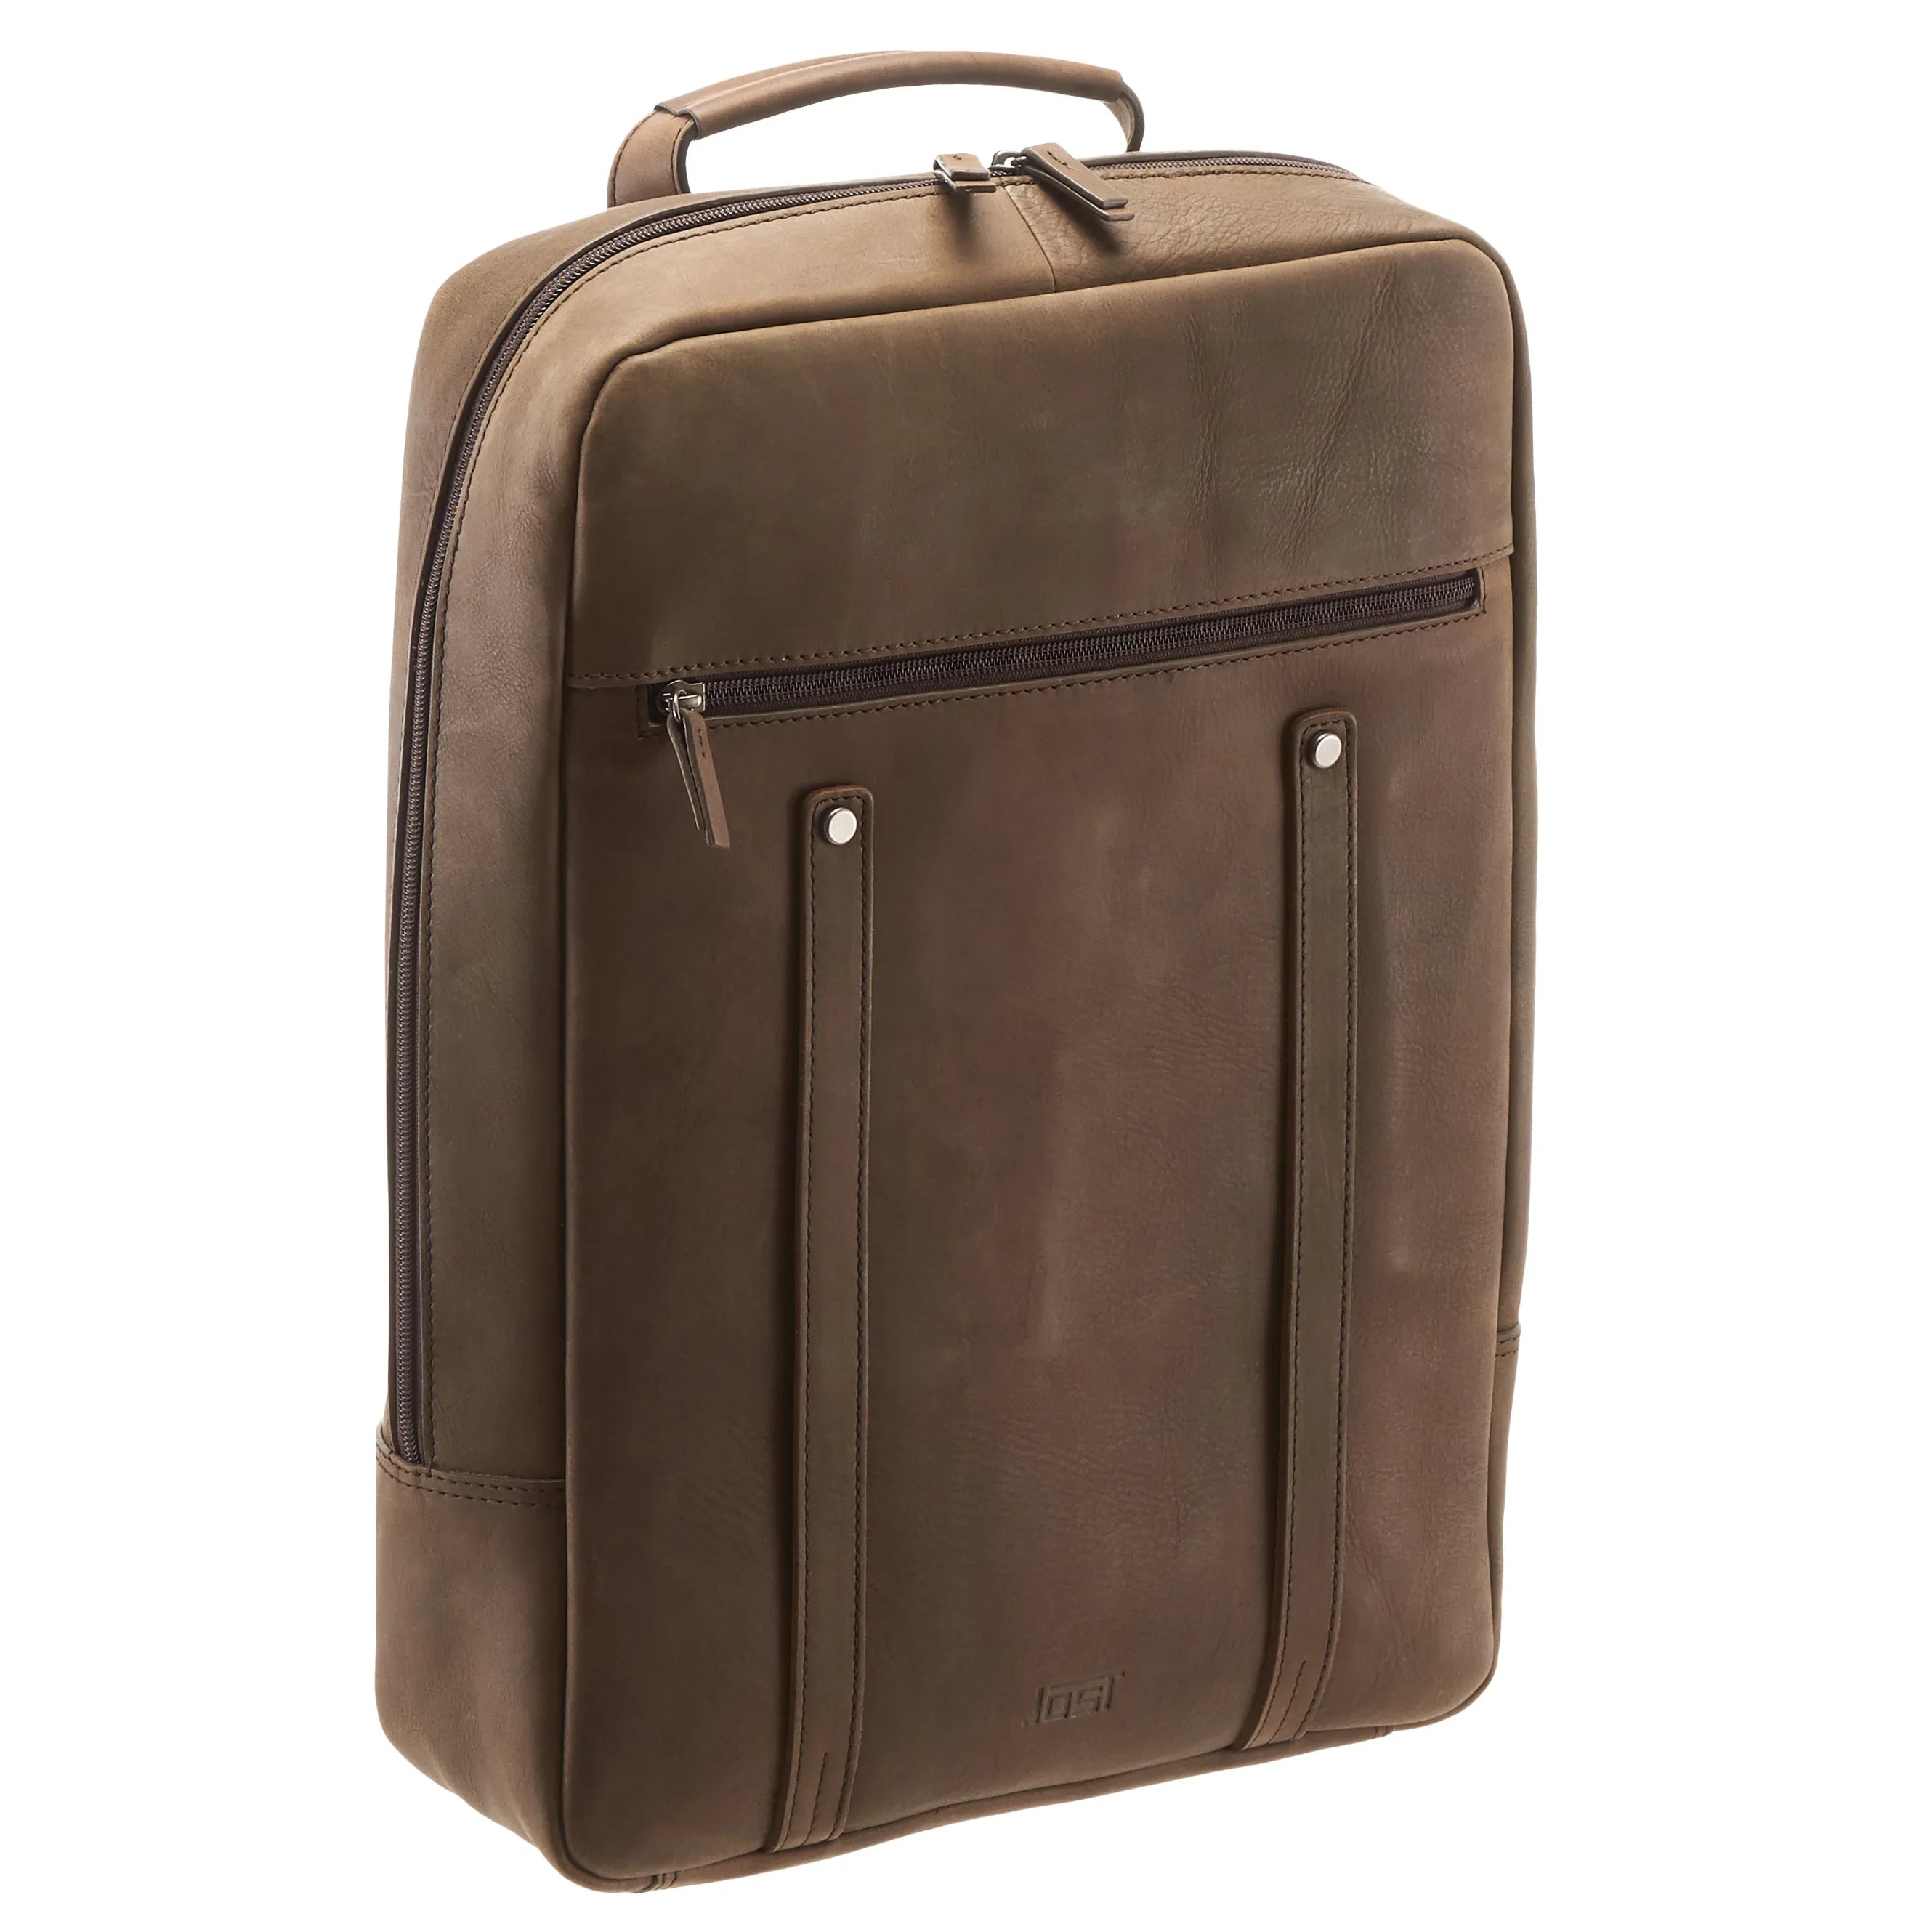 Jost Salo Daypack Rucksack mit Laptopfach 44 cm - braun